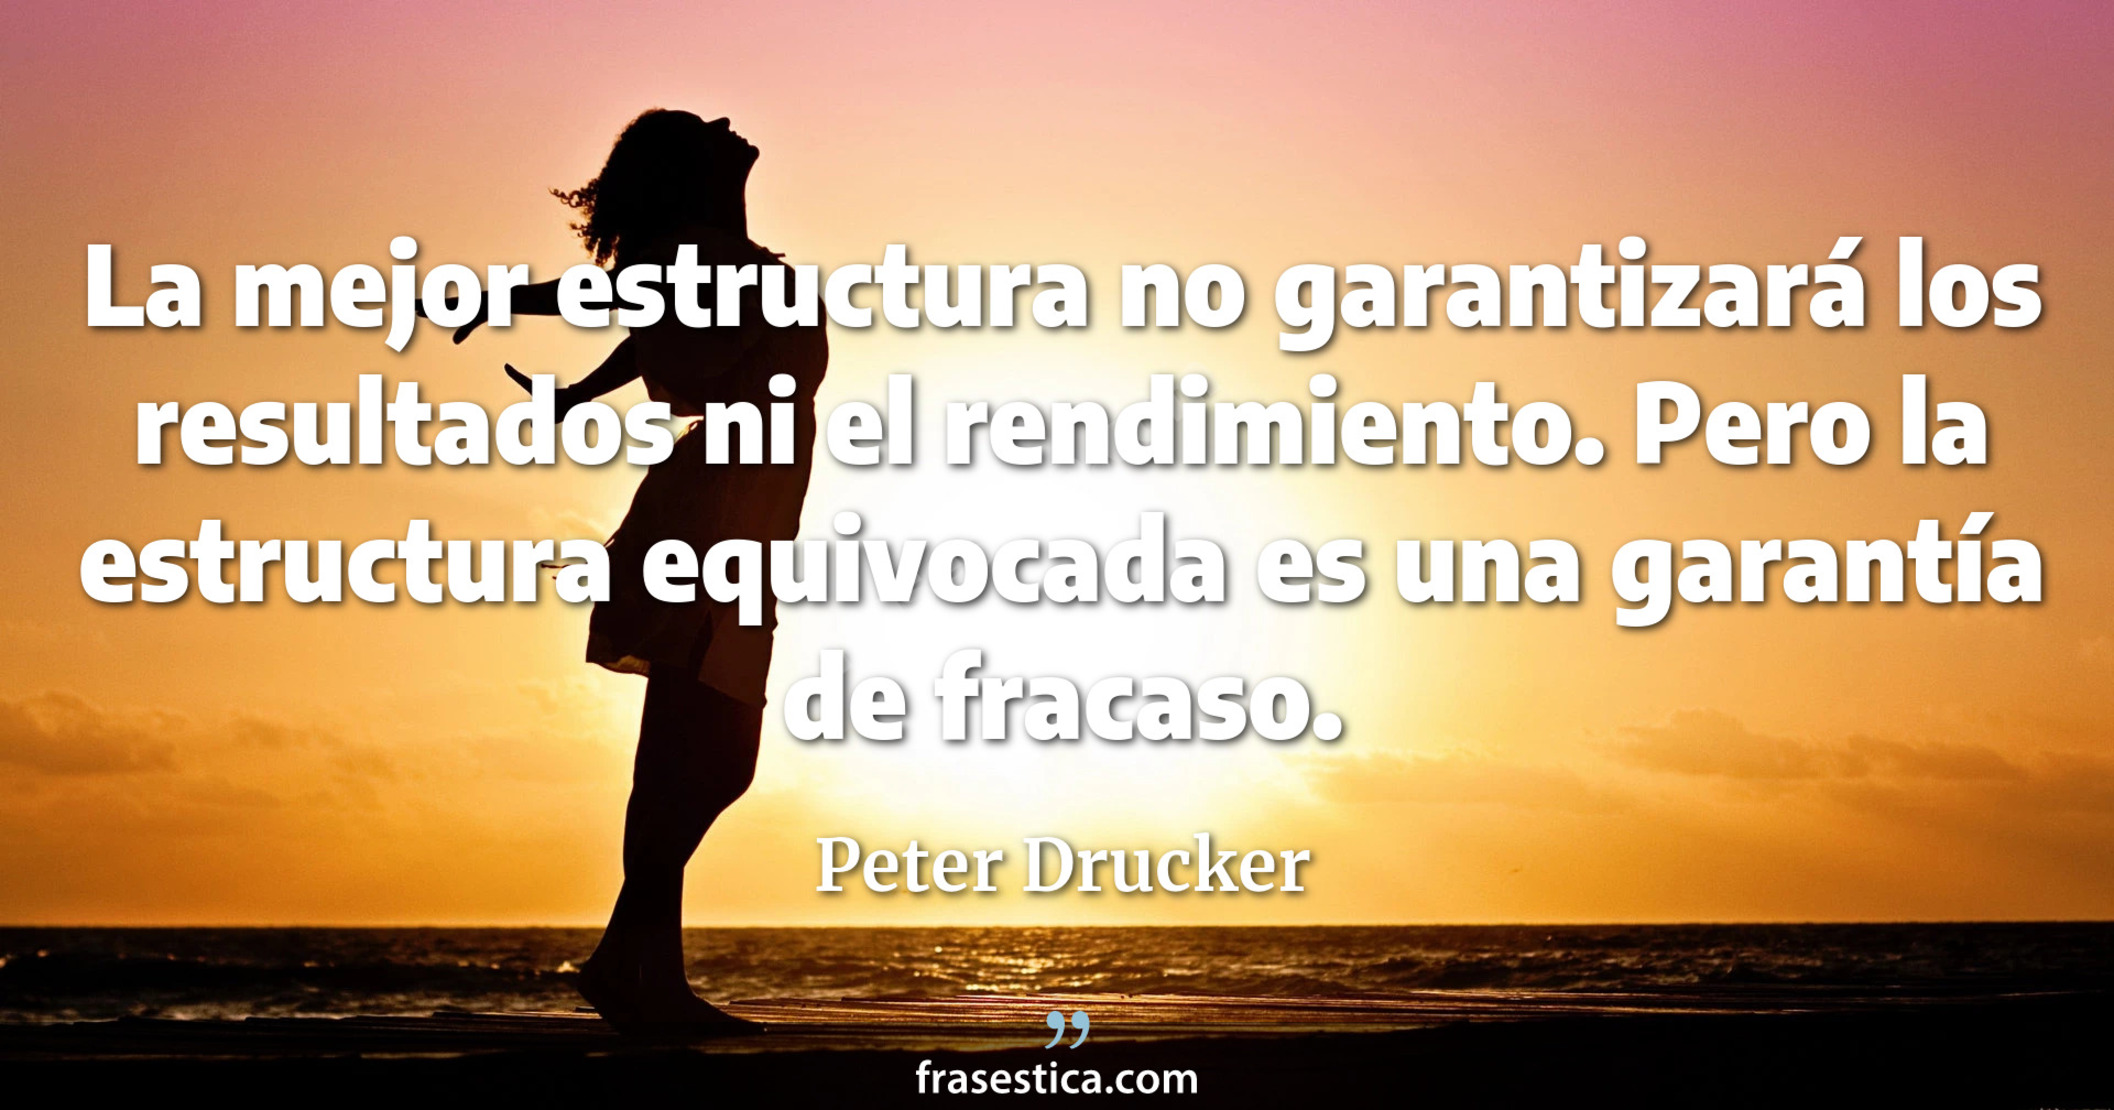 La mejor estructura no garantizará los resultados ni el rendimiento. Pero la estructura equivocada es una garantía de fracaso. - Peter Drucker